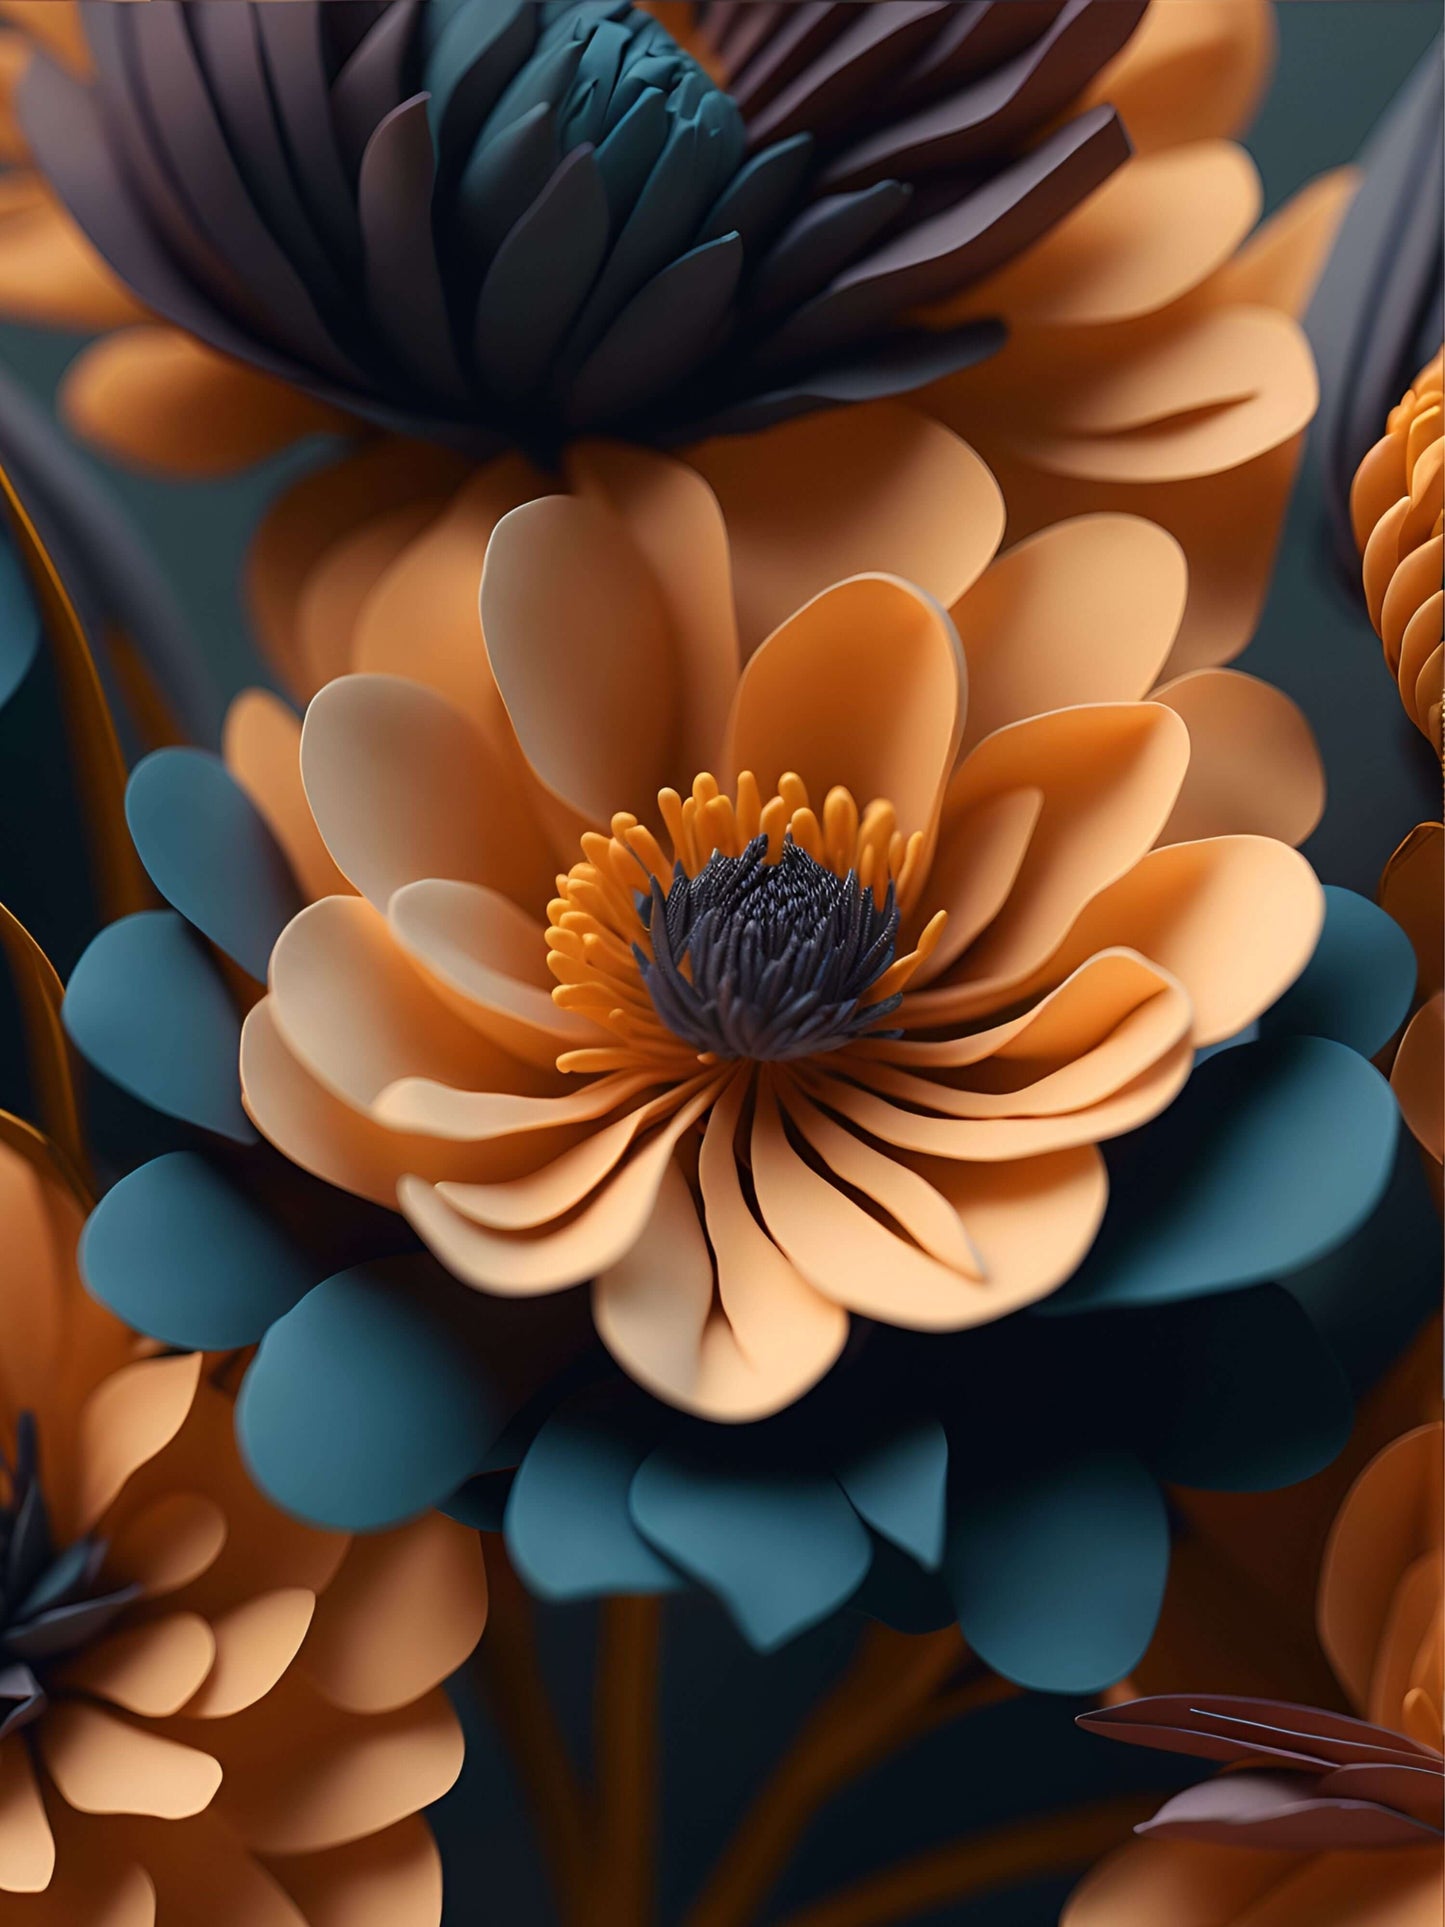 Wunderschöne Fantasy Blume,mit Lebendige Farben Terrakotta, Gold, Violet Orange, Pfirsich